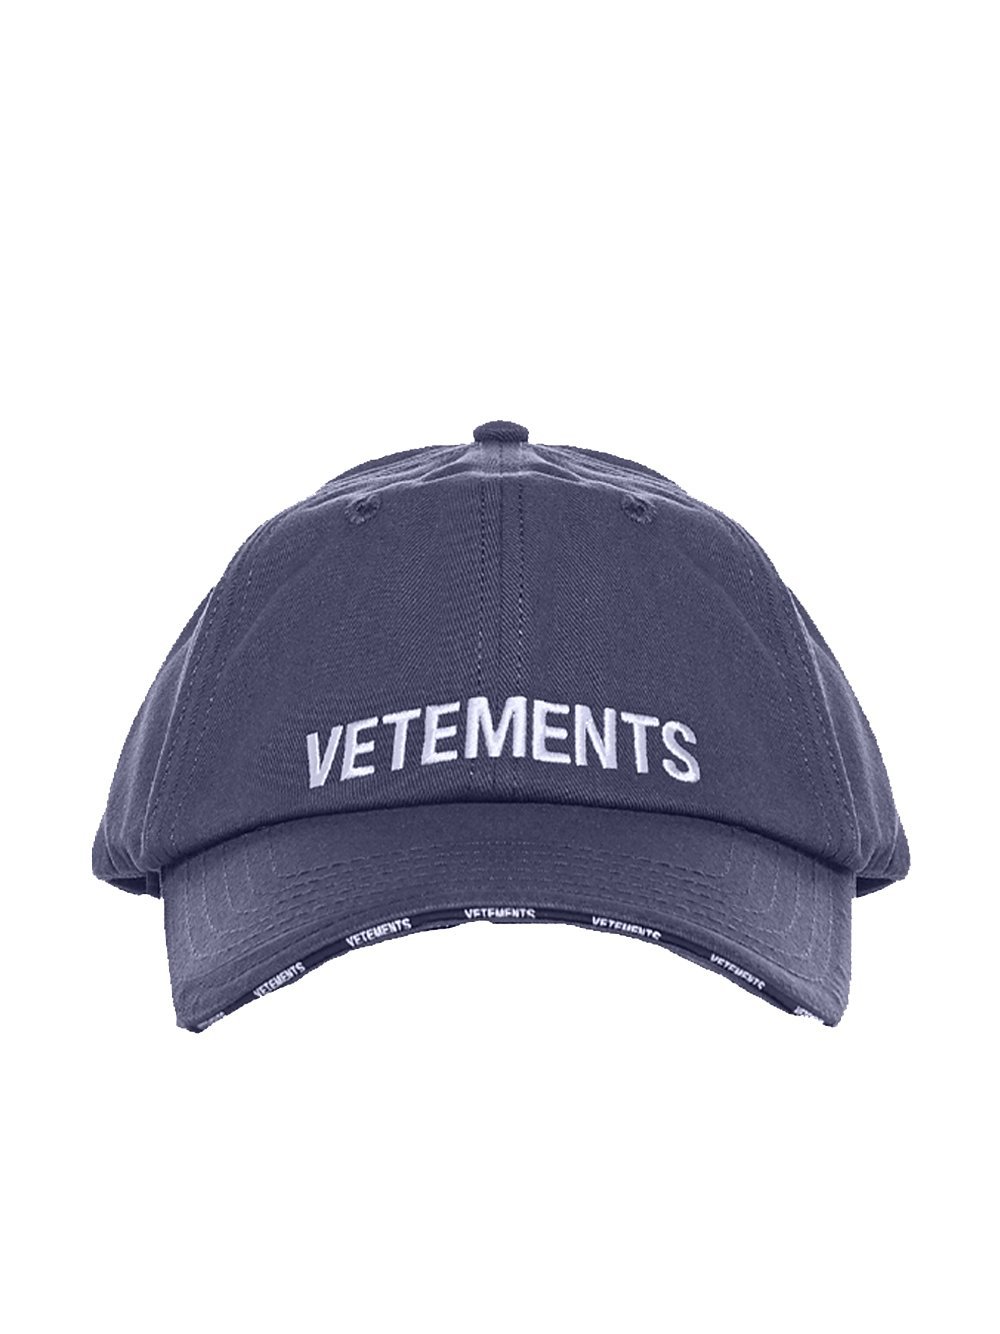 VETEMENTS Logo Cap Navy